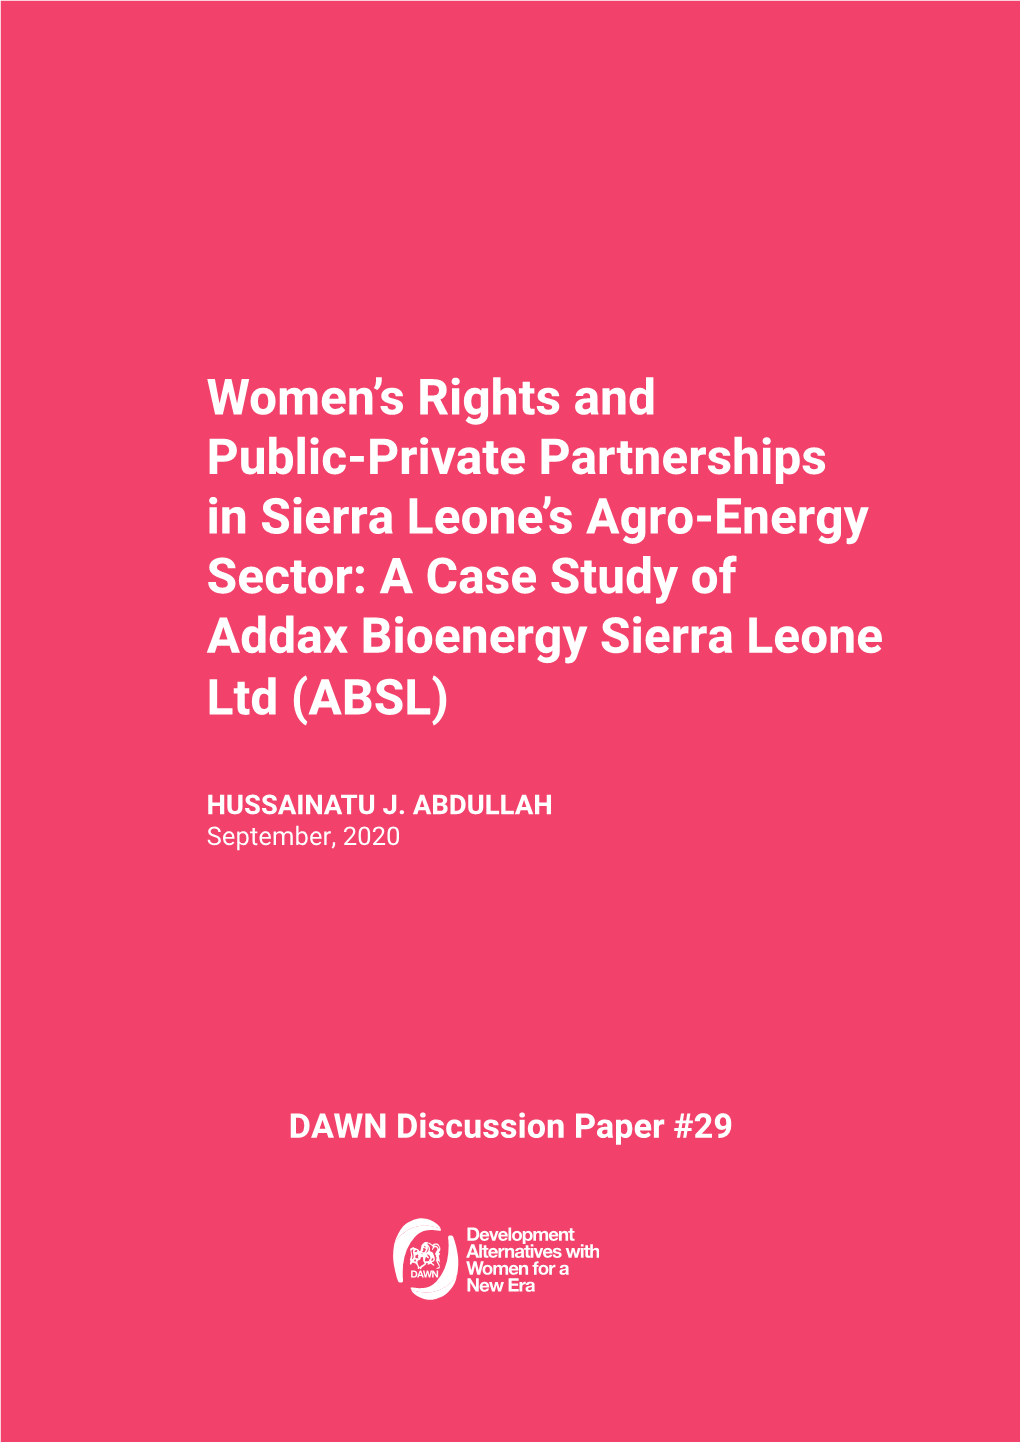 A Case Study of Addax Bioenergy Sierra Leone Ltd (ABSL)